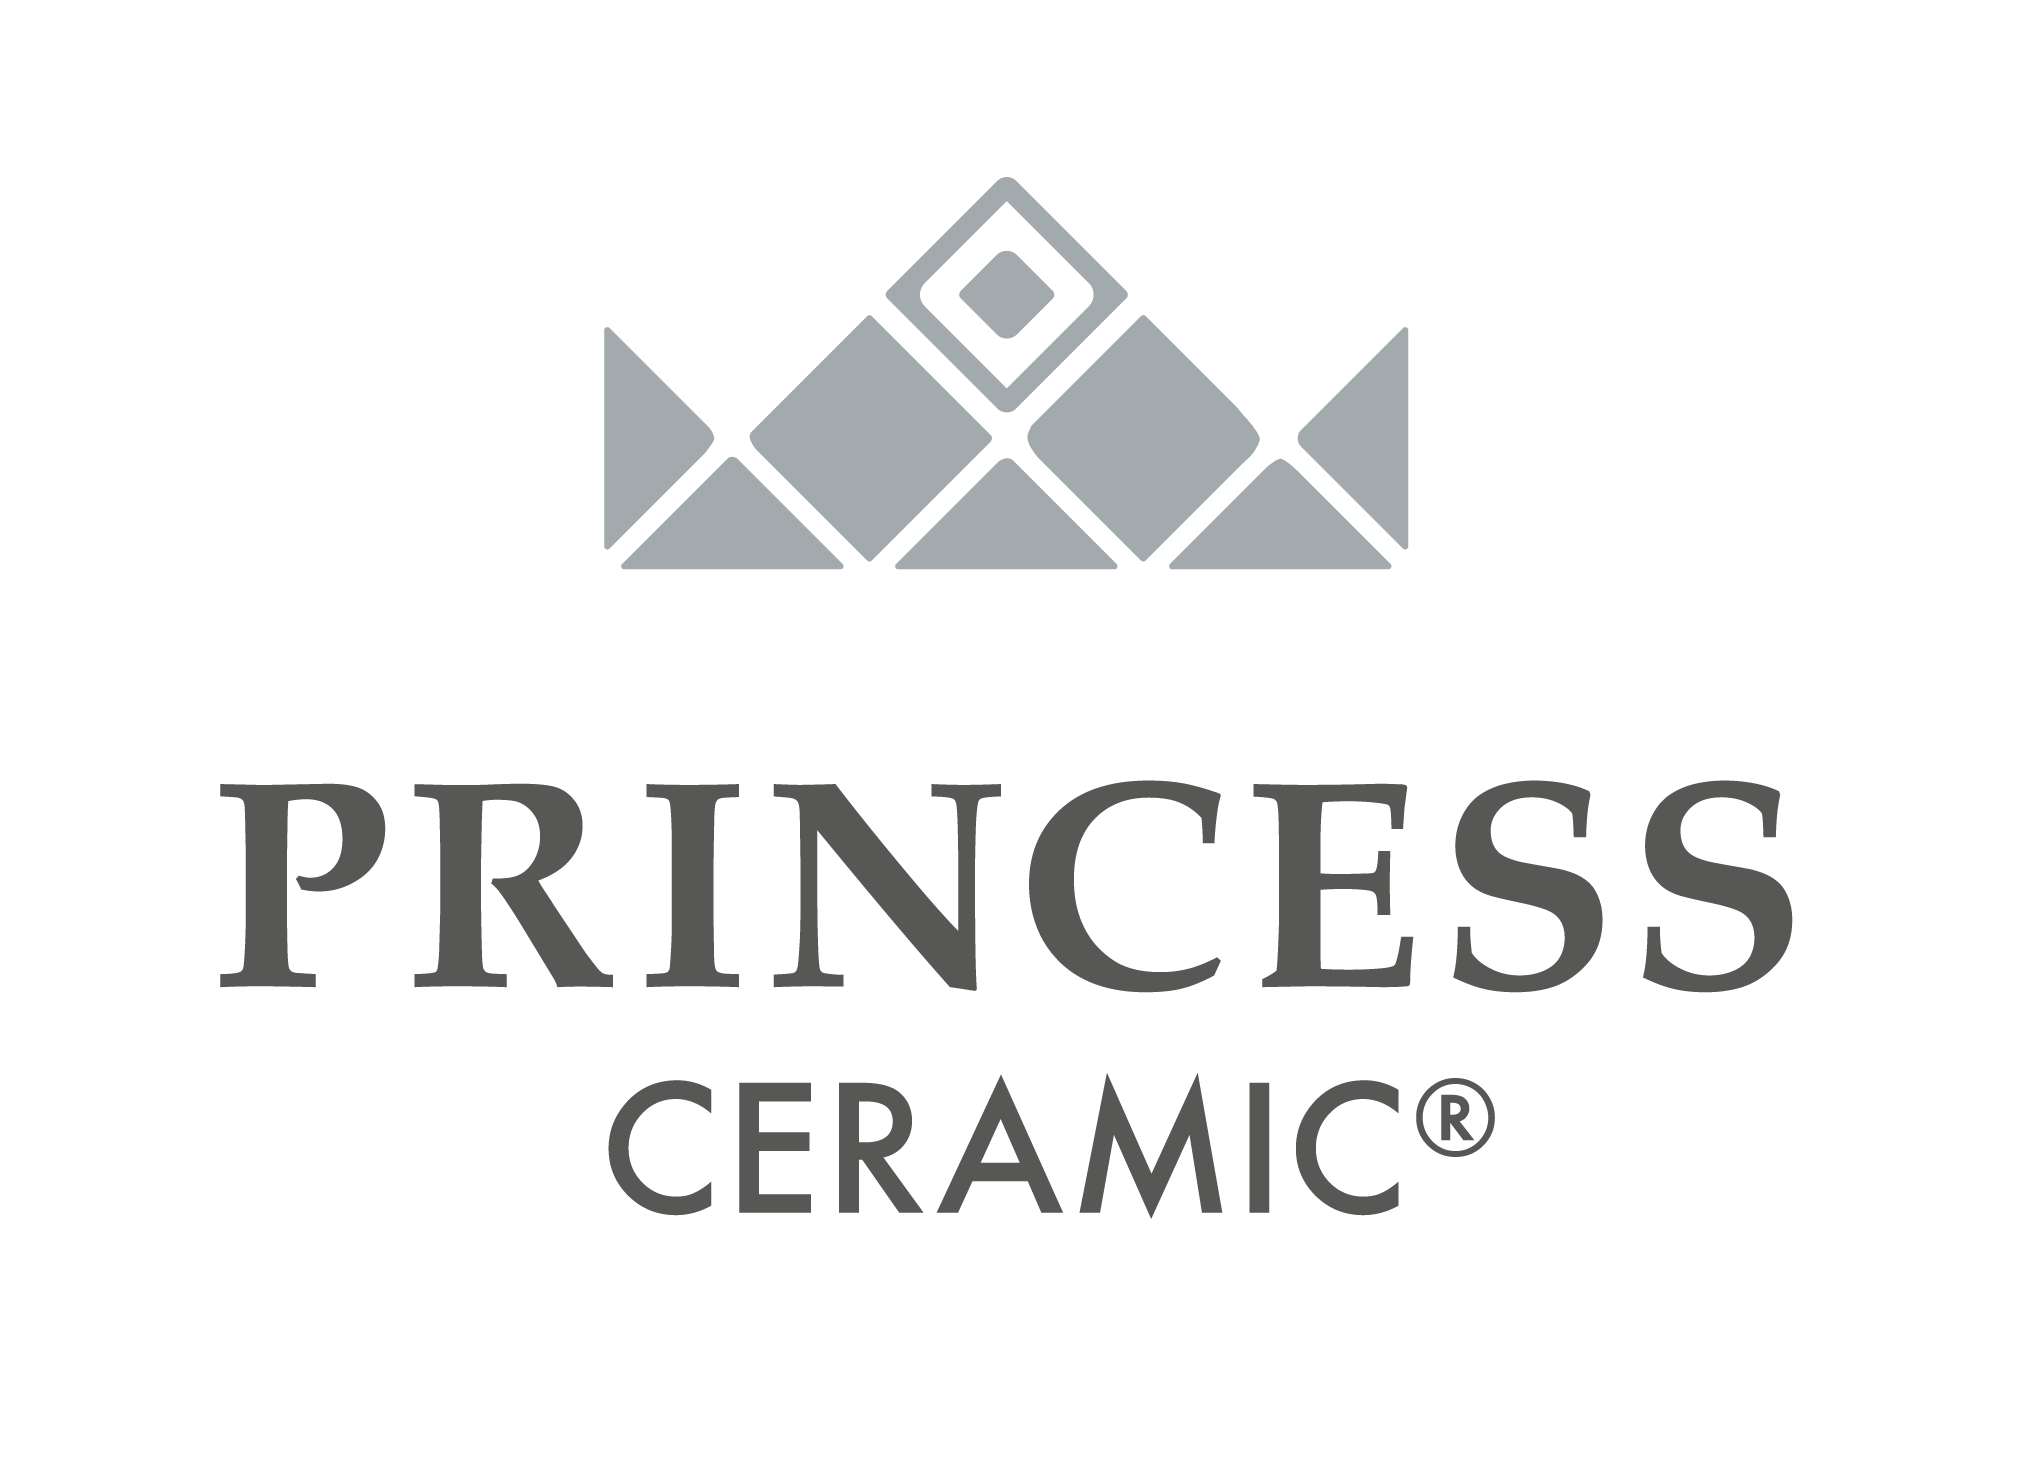 02 PRINCESS CERAMIC COLOUR GRAY CERAMIC